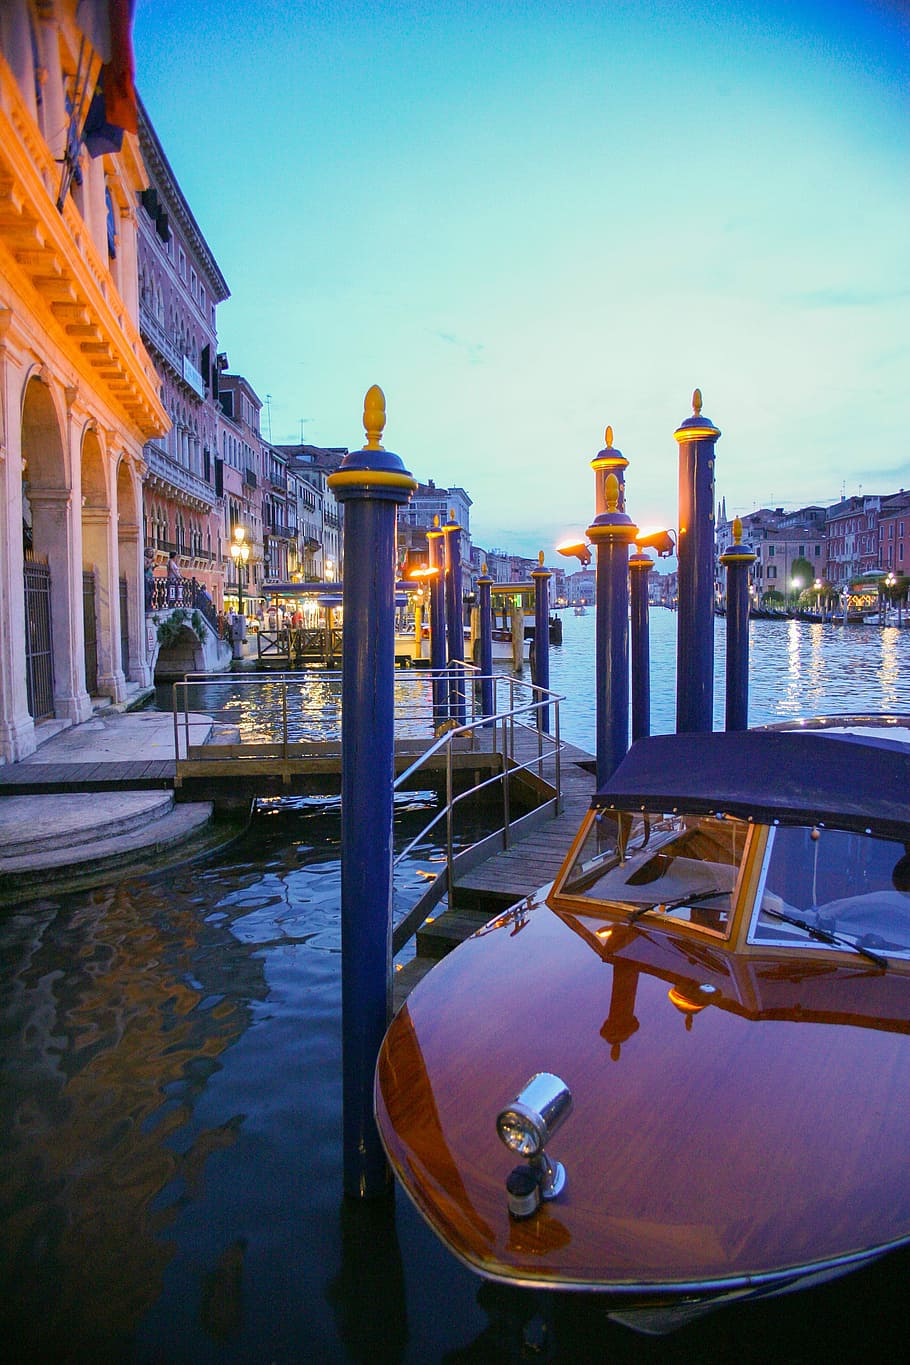 Boat, Venice, Italy, Venetian, Italian, venice, italy, canal, europe, waterway, architecture